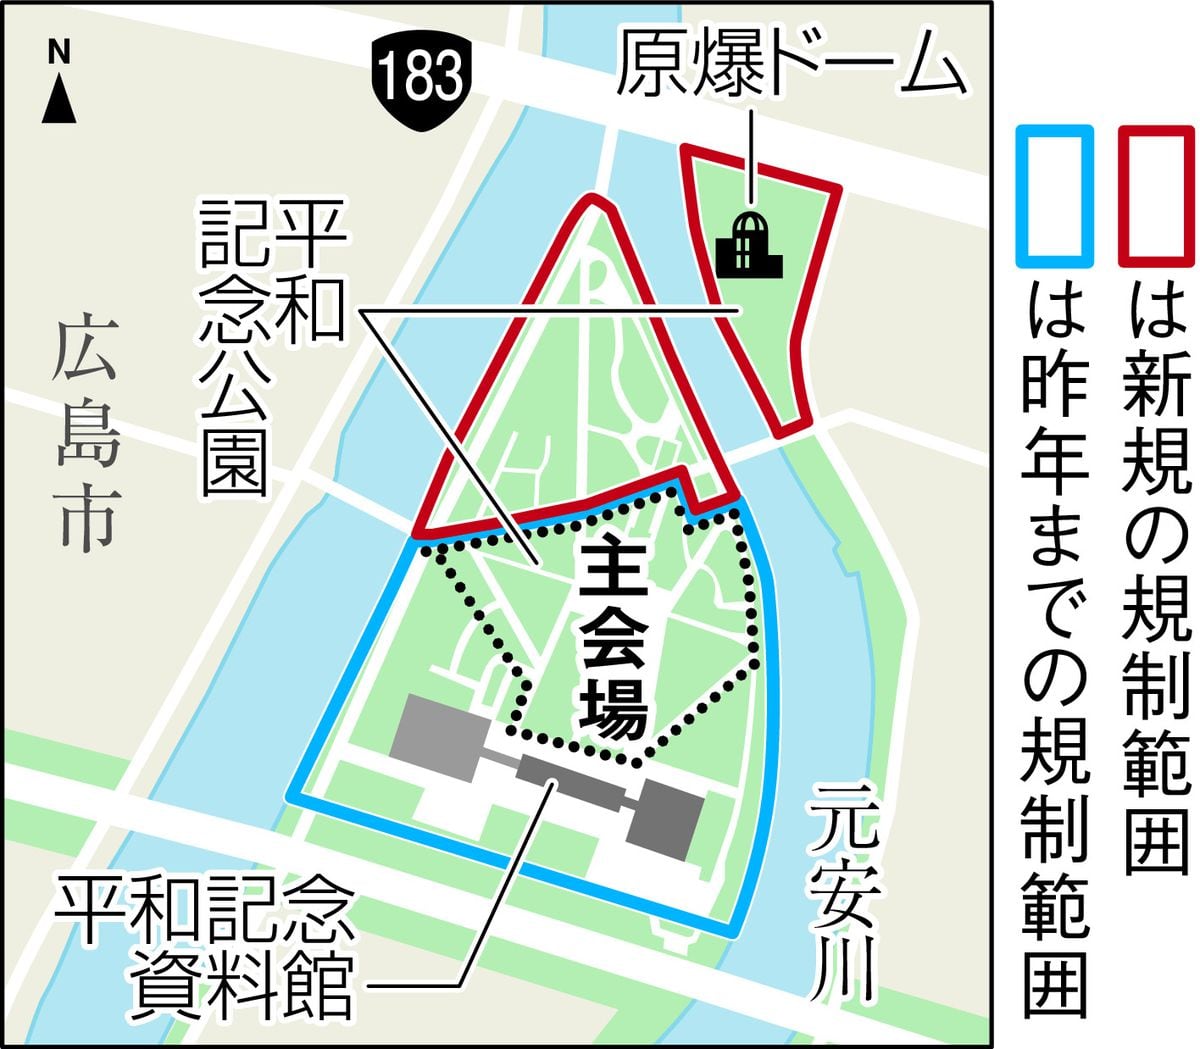 反戦・反核「騒音集会」　広島市入園規制の効果はいかに　あす8・6「原爆の日」